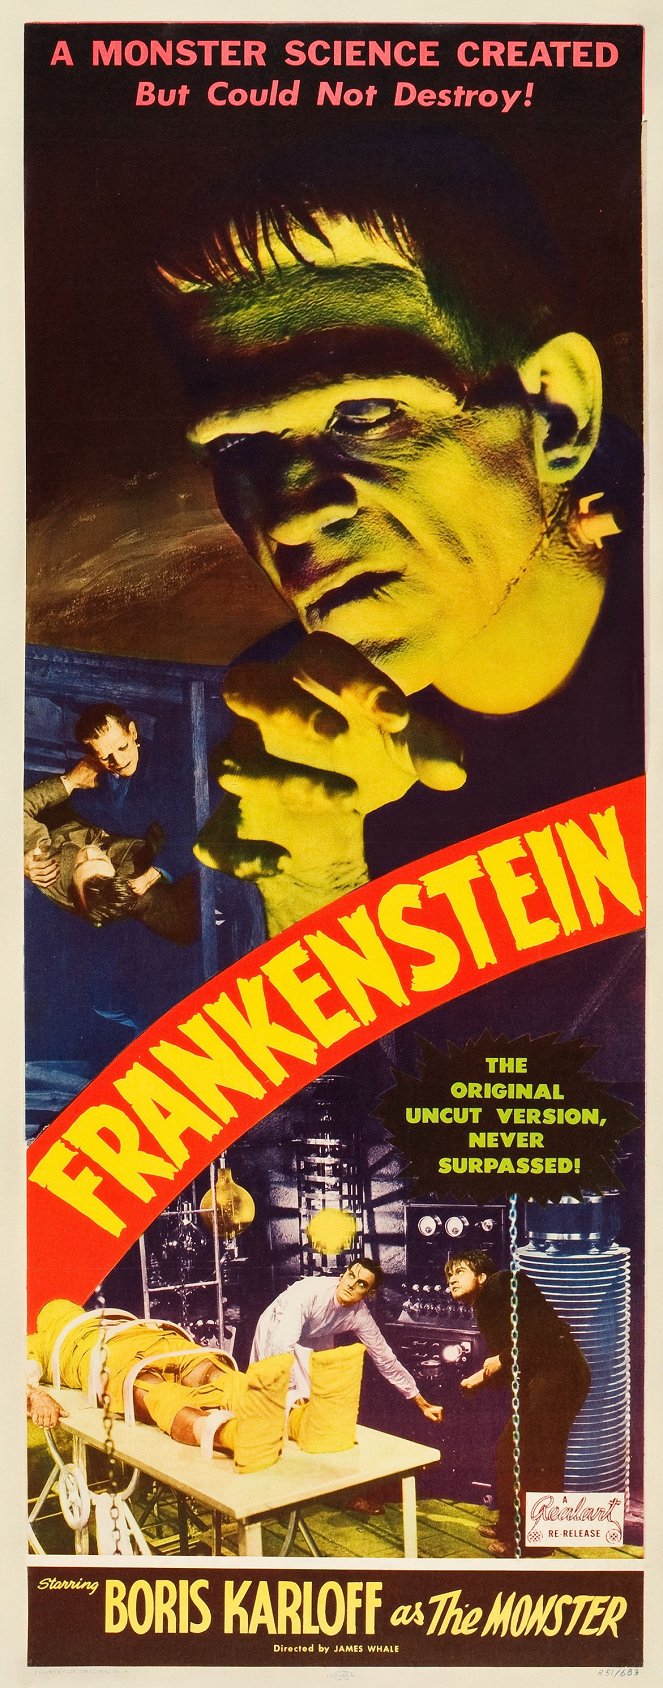 Frankenstein - Affiches